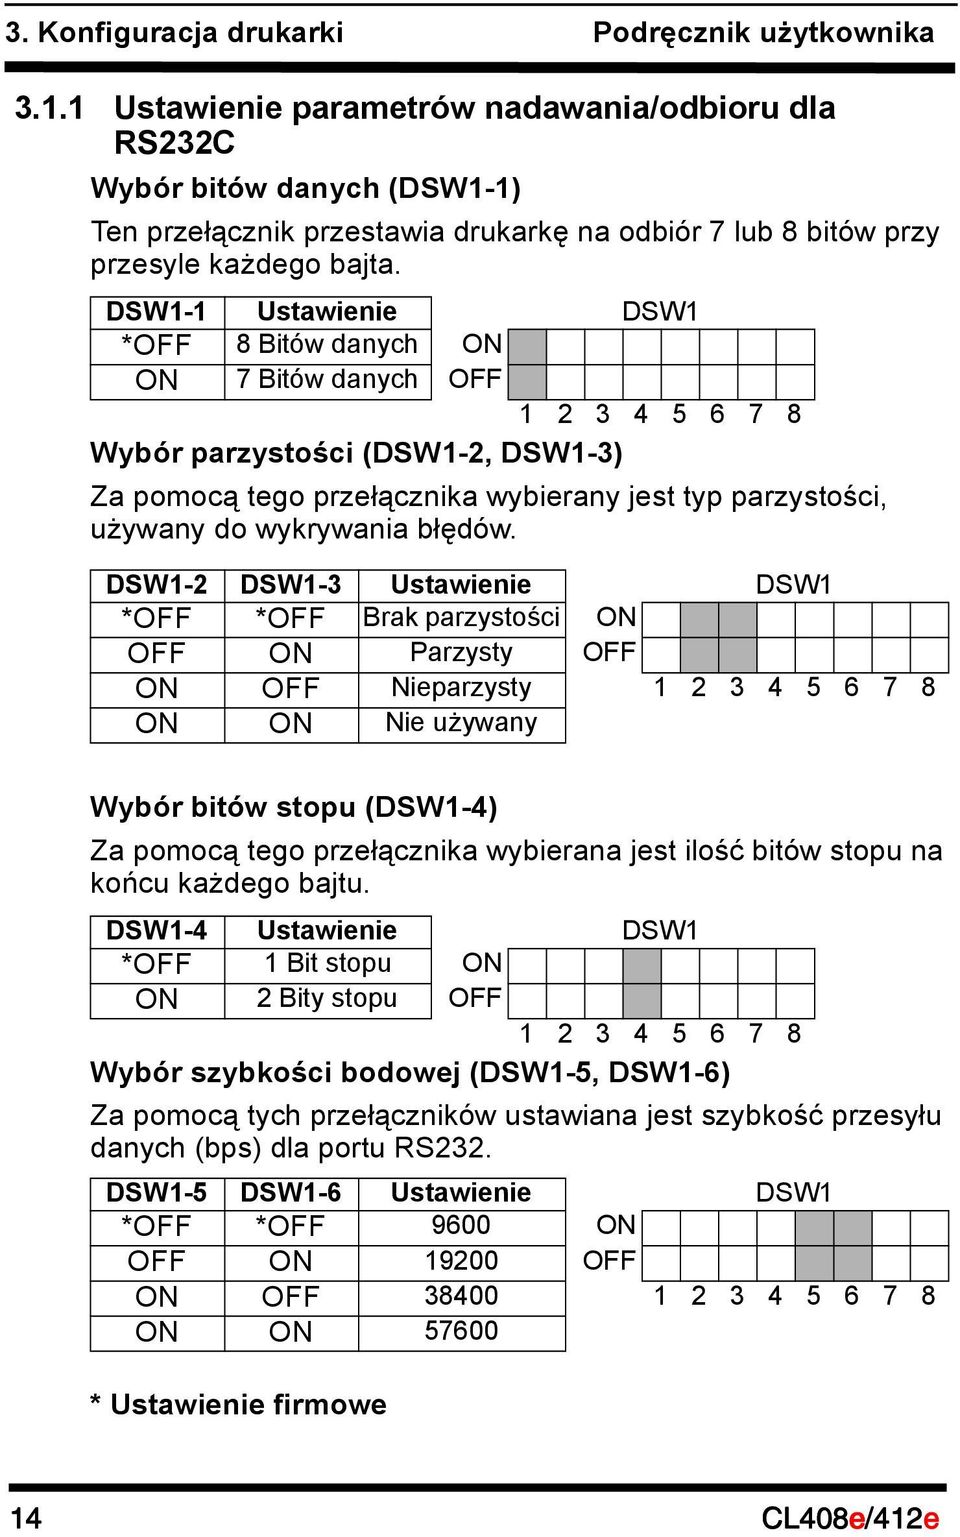 DSW1-1 Ustawienie DSW1 *OFF 8 Bitów danych ON ON 7 Bitów danych OFF 1 2 3 4 5 6 7 8 Wybór parzystości (DSW1-2, DSW1-3) Za pomocą tego przełącznika wybierany jest typ parzystości, używany do